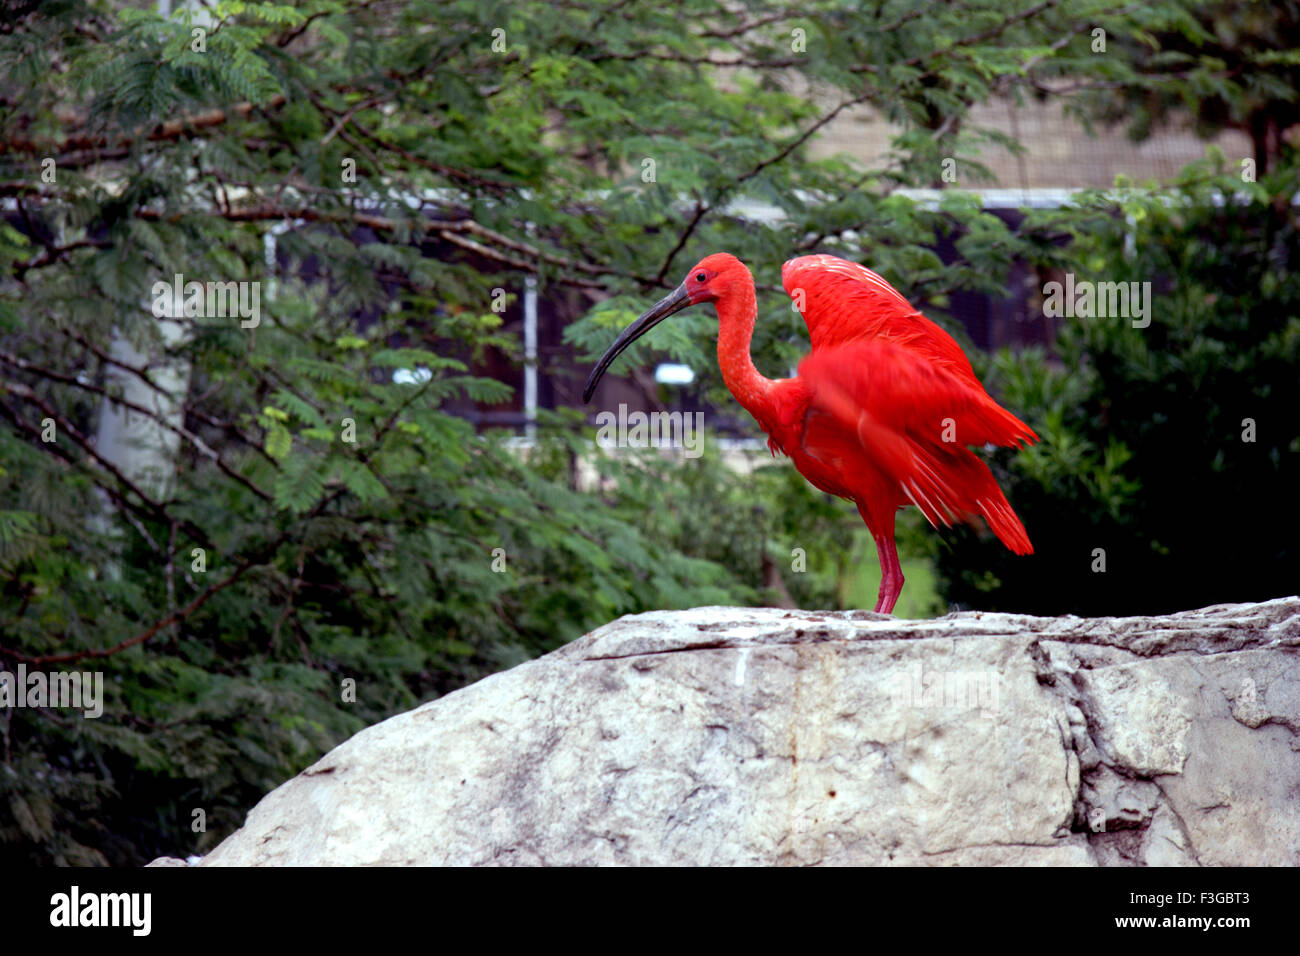 Bel oiseau appelé Ibis Rouge (Eudocimus caoutchouc) vu en Afrique du Sud Banque D'Images